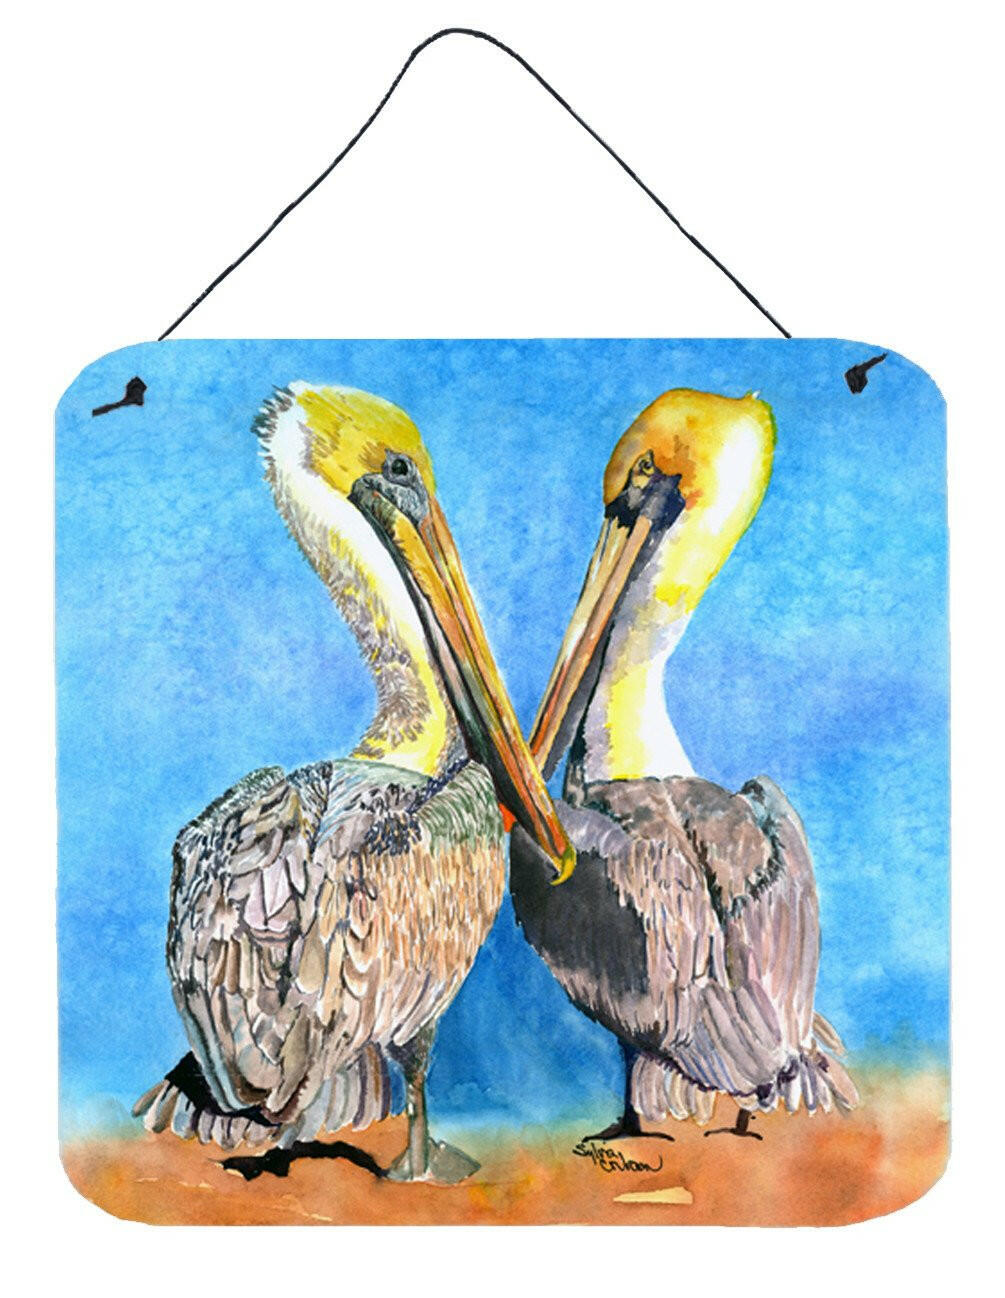 Bird - Pelican Aluminium Metal Wall or Door Hanging Prints by Caroline's Treasures